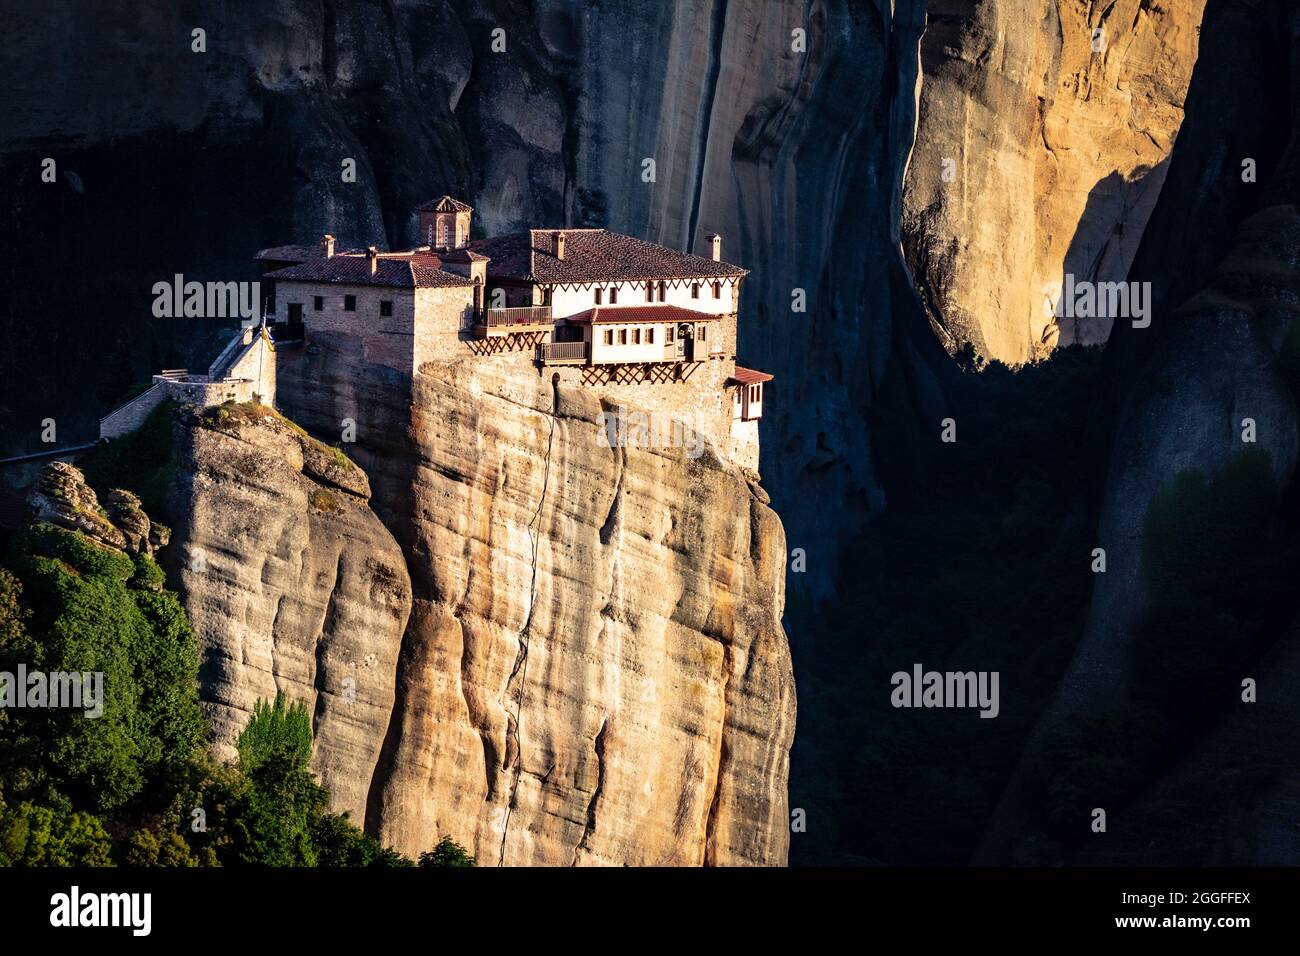 Rousanou Monastery on a monolithic pillar in Meteora, Pindos Mountains, Greece Stock Photo